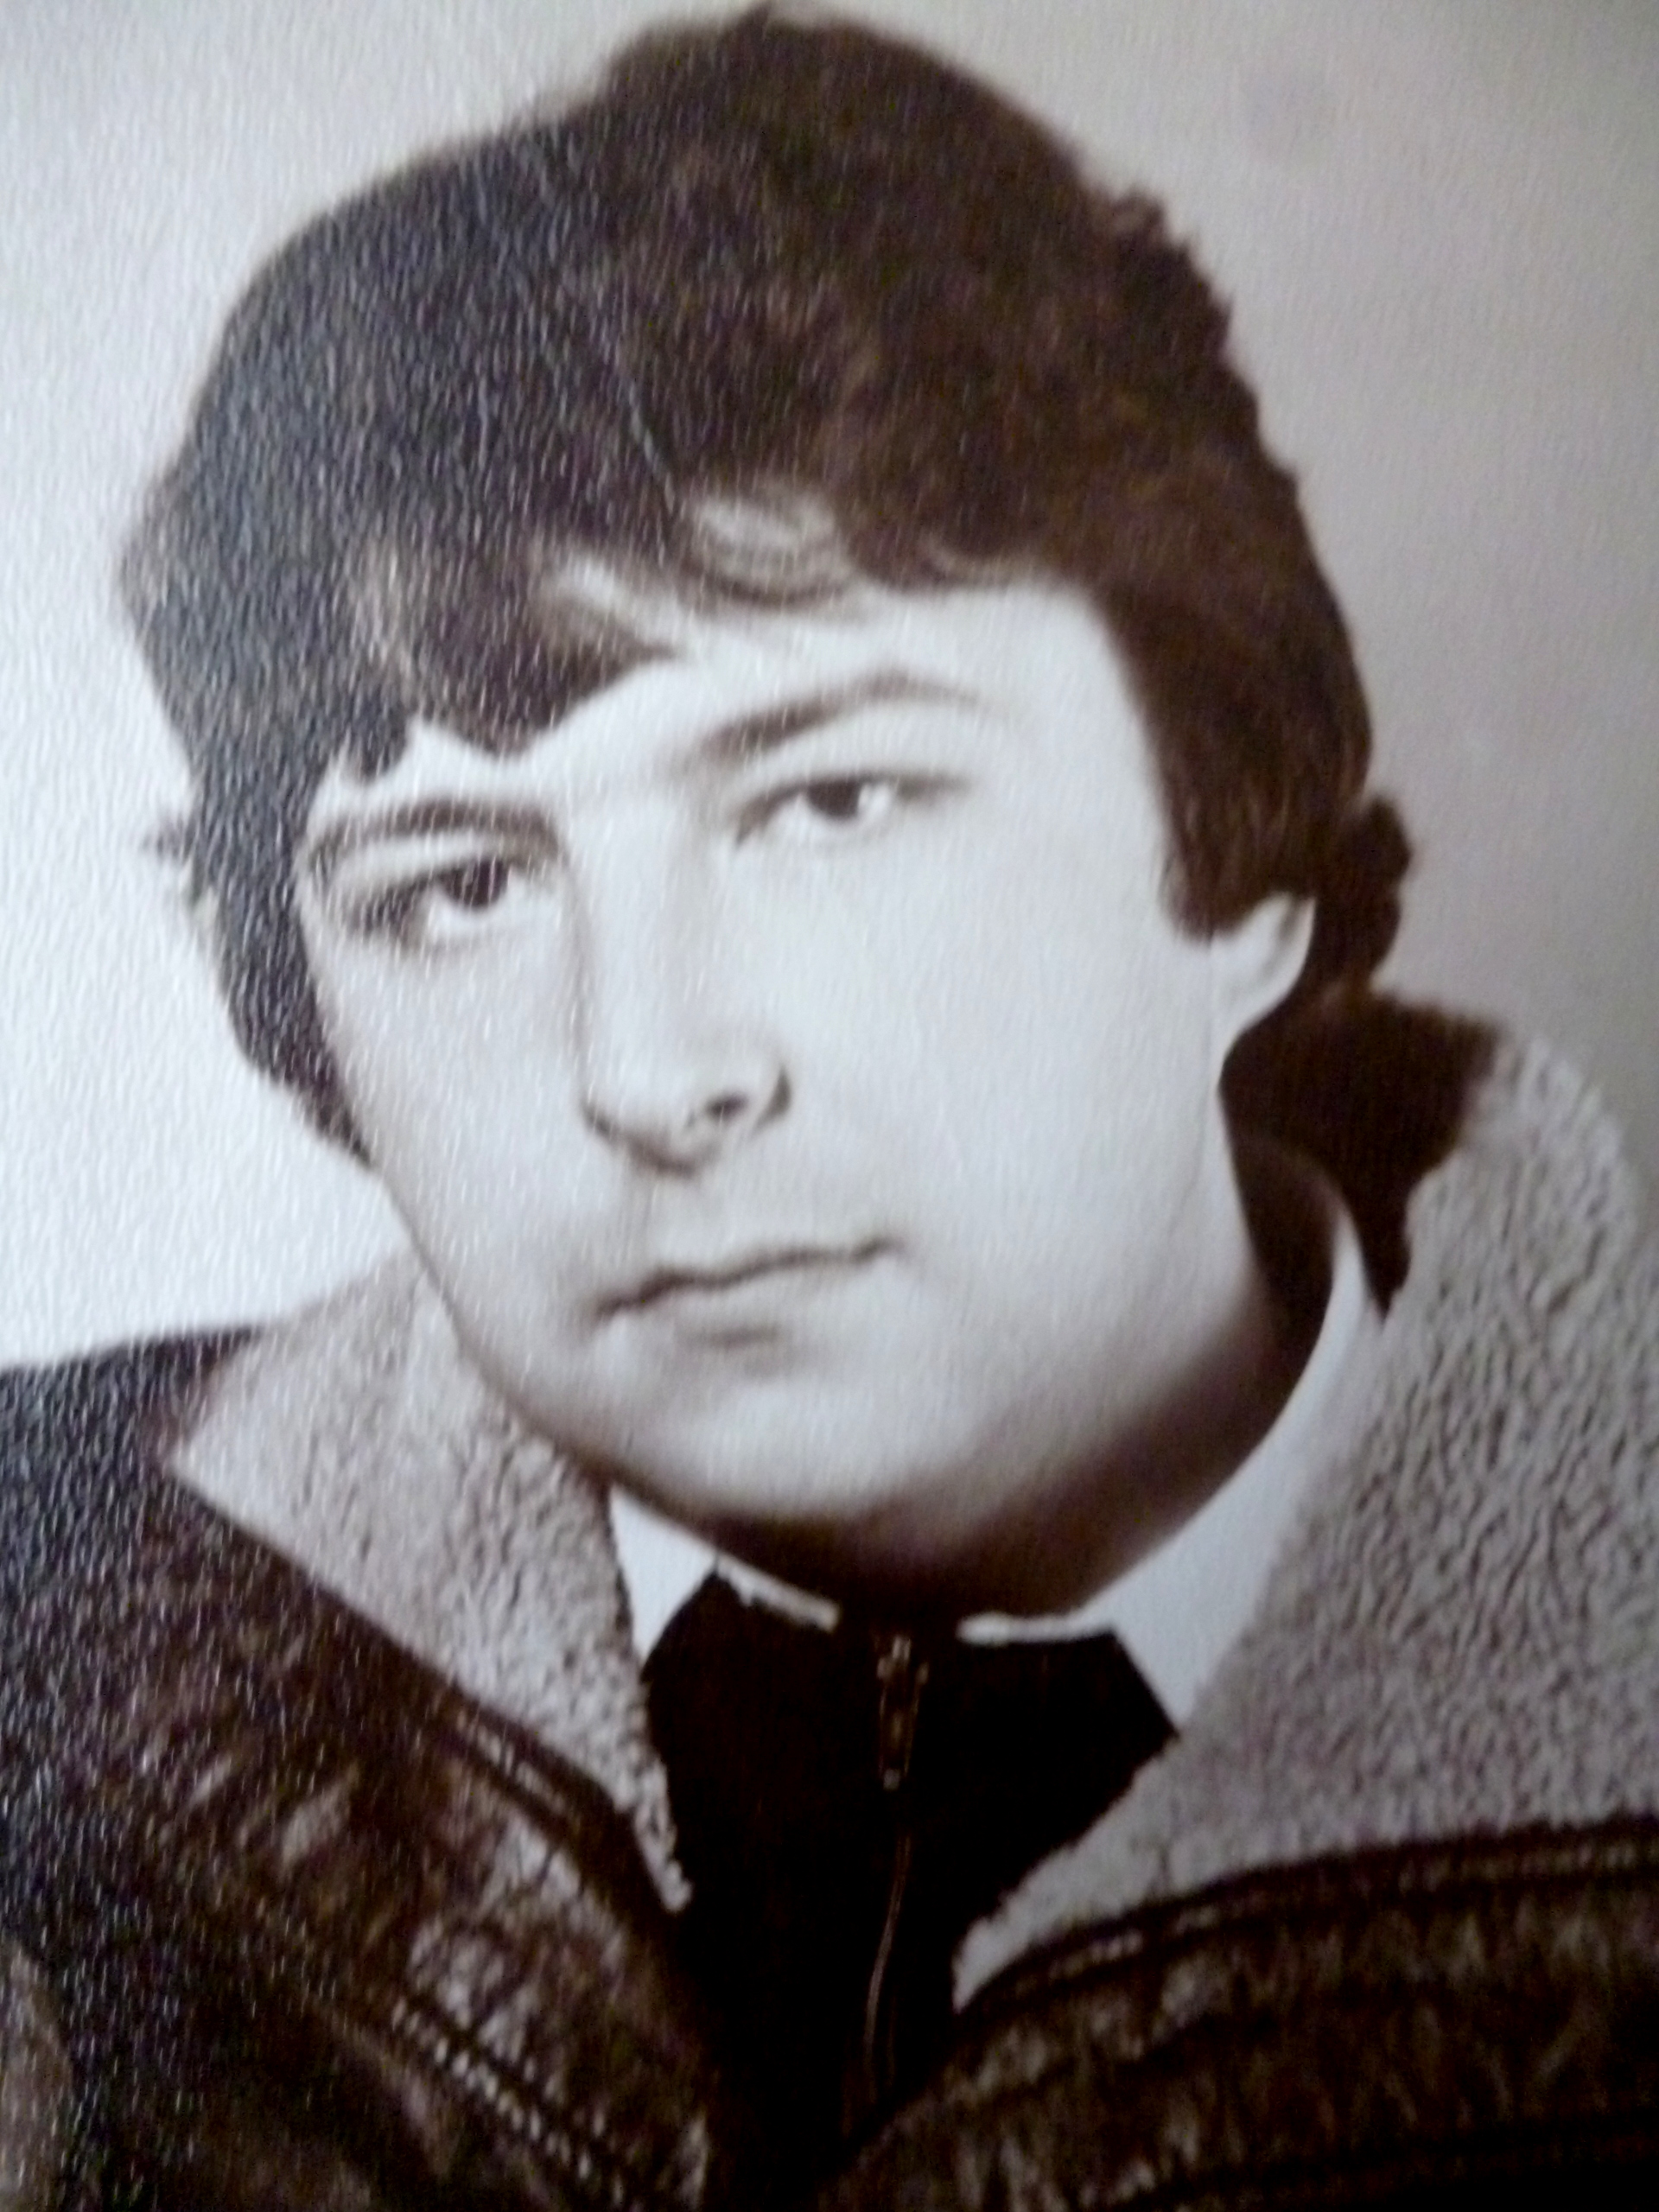 Новиков Владимир Михайлович